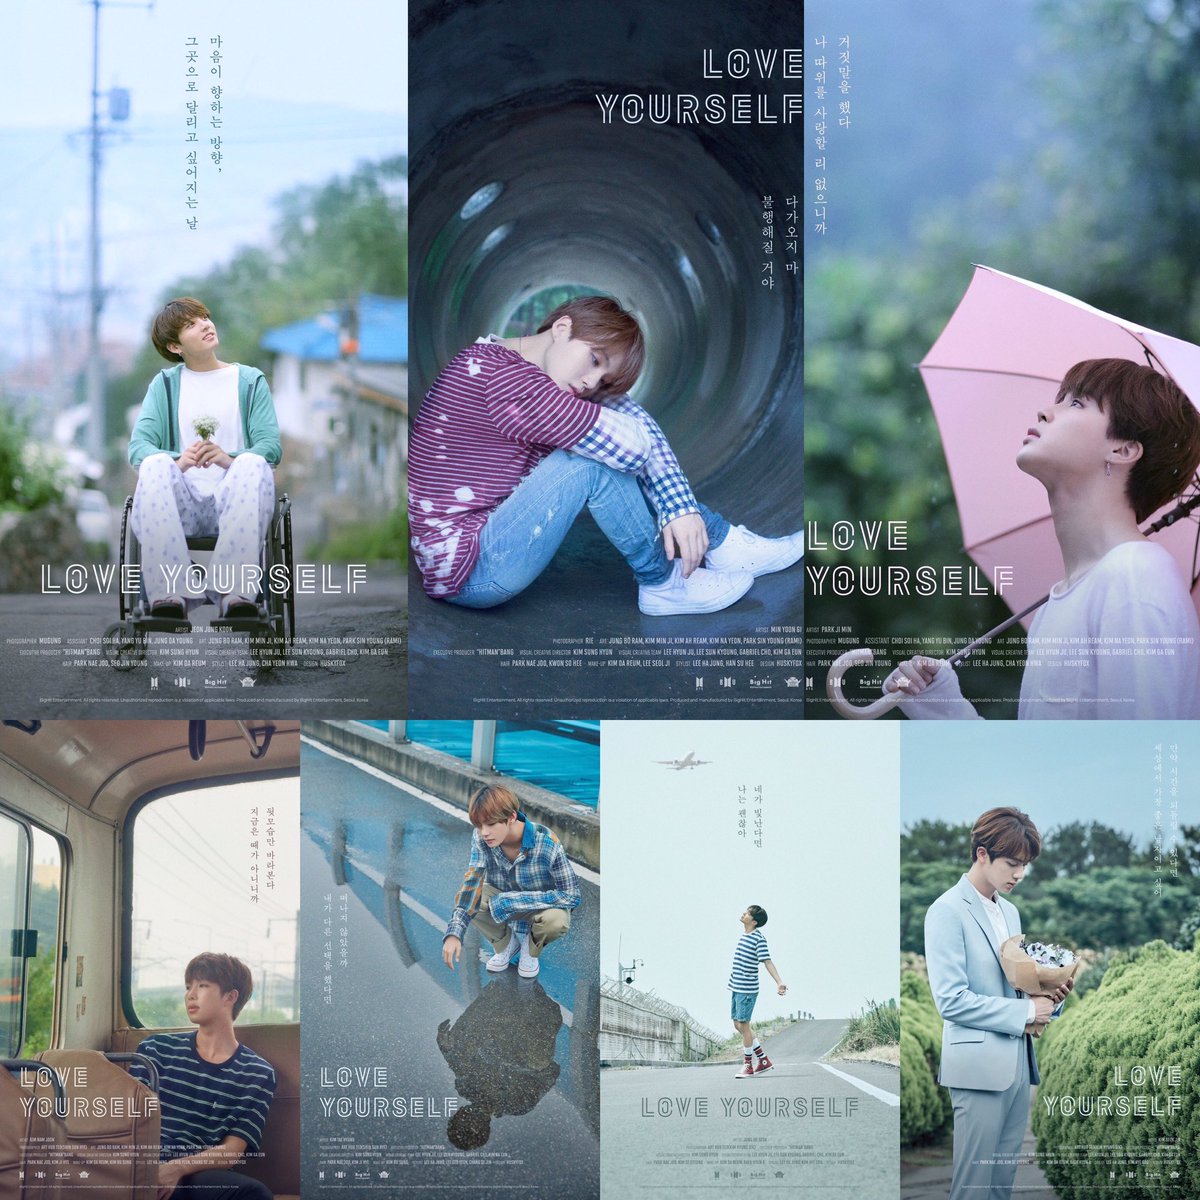 Imagén que contiene siete posters procedentes a los cortos publicados por la boy band surcoreana BTS